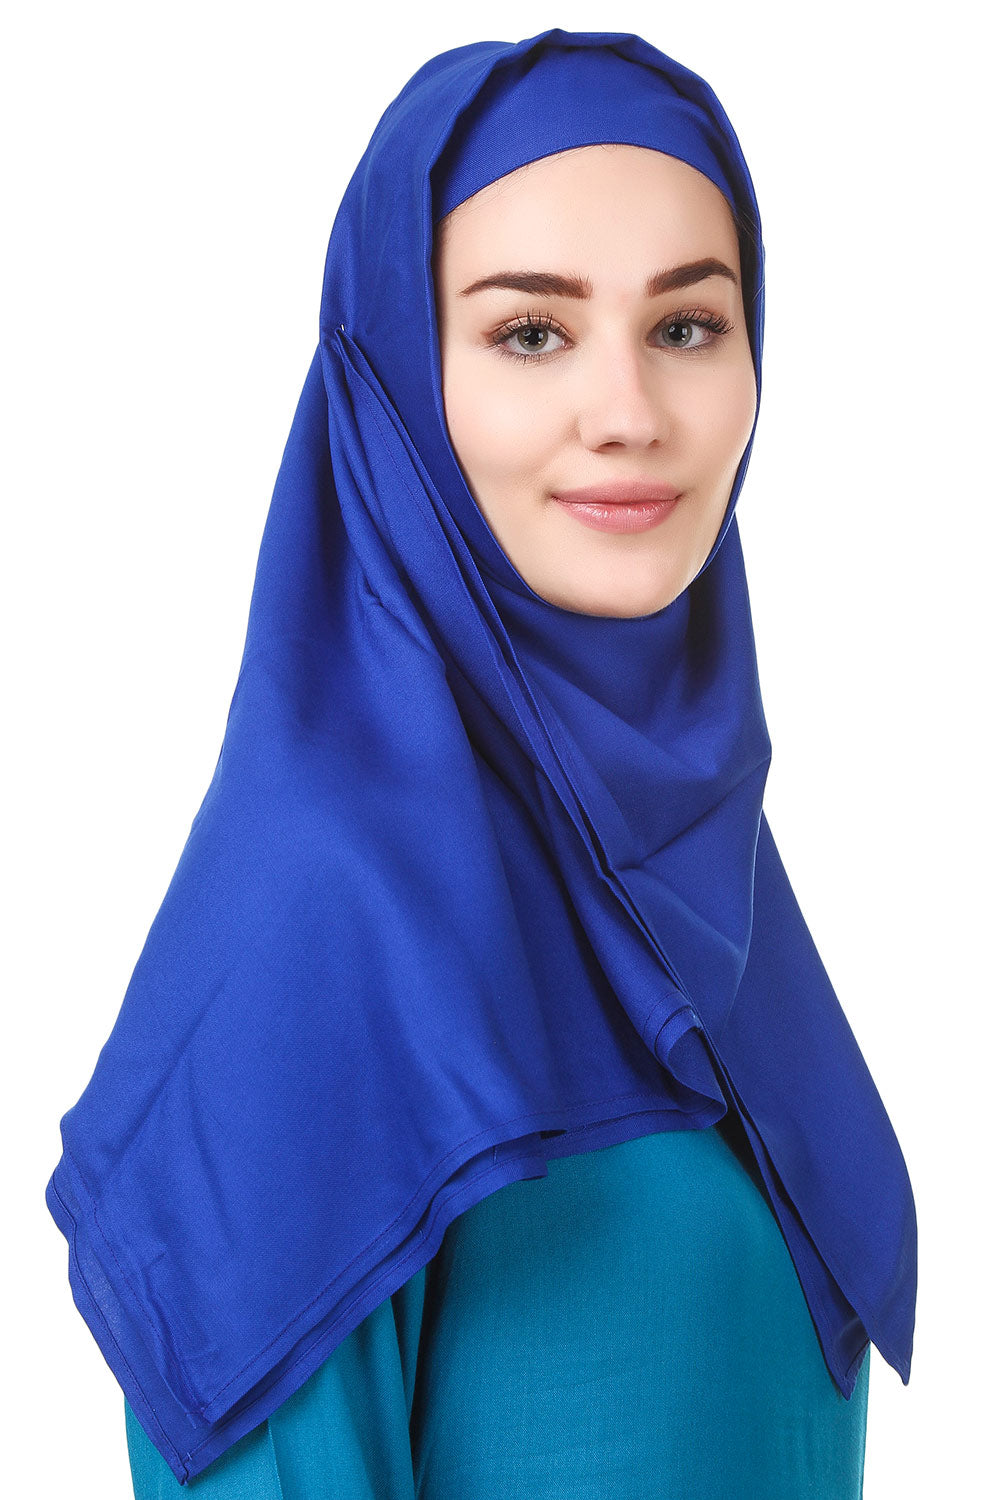 Shabina Rayon Hijab